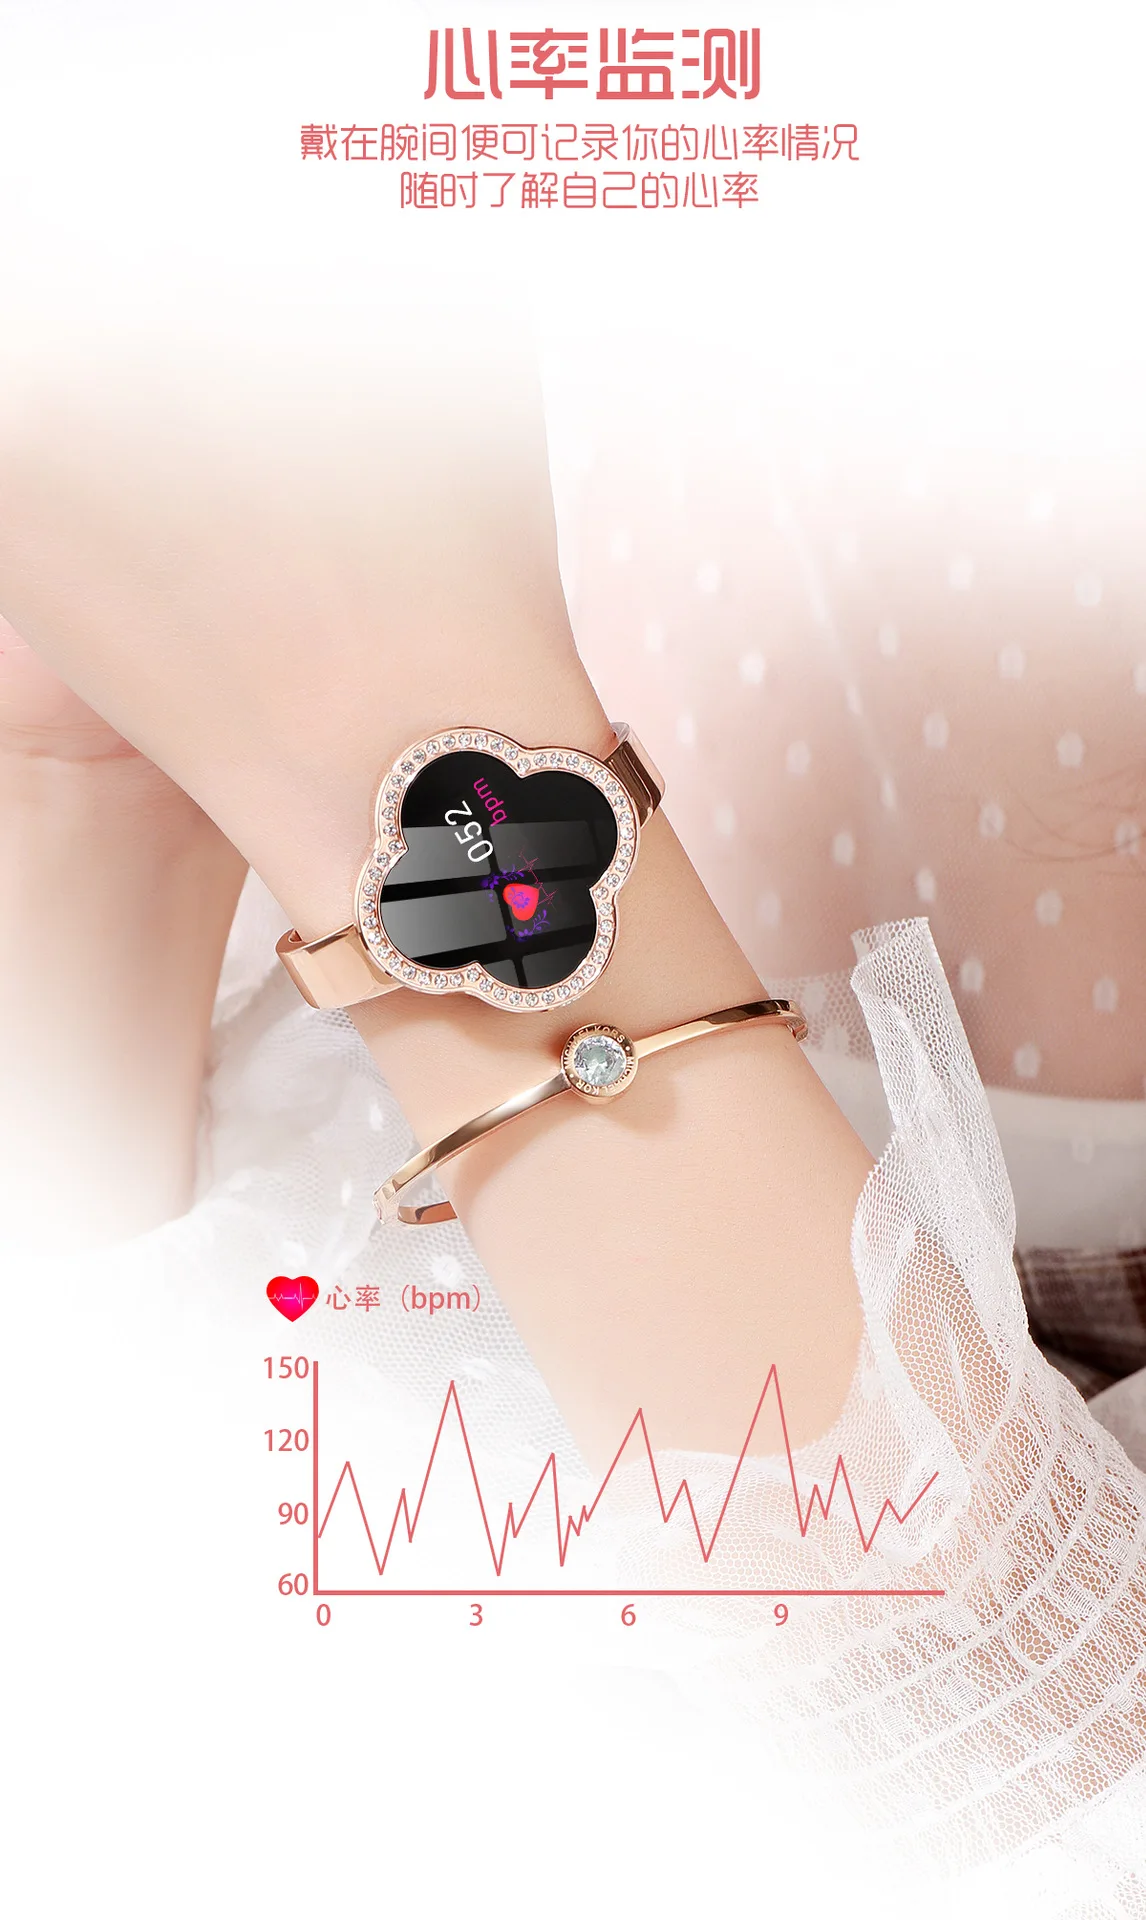 S6 женский цветной экран, умный Браслет, пульсометр, кровяное давление, контроль кислорода в крови, мульти режим движения, дистанционное управление, Phot